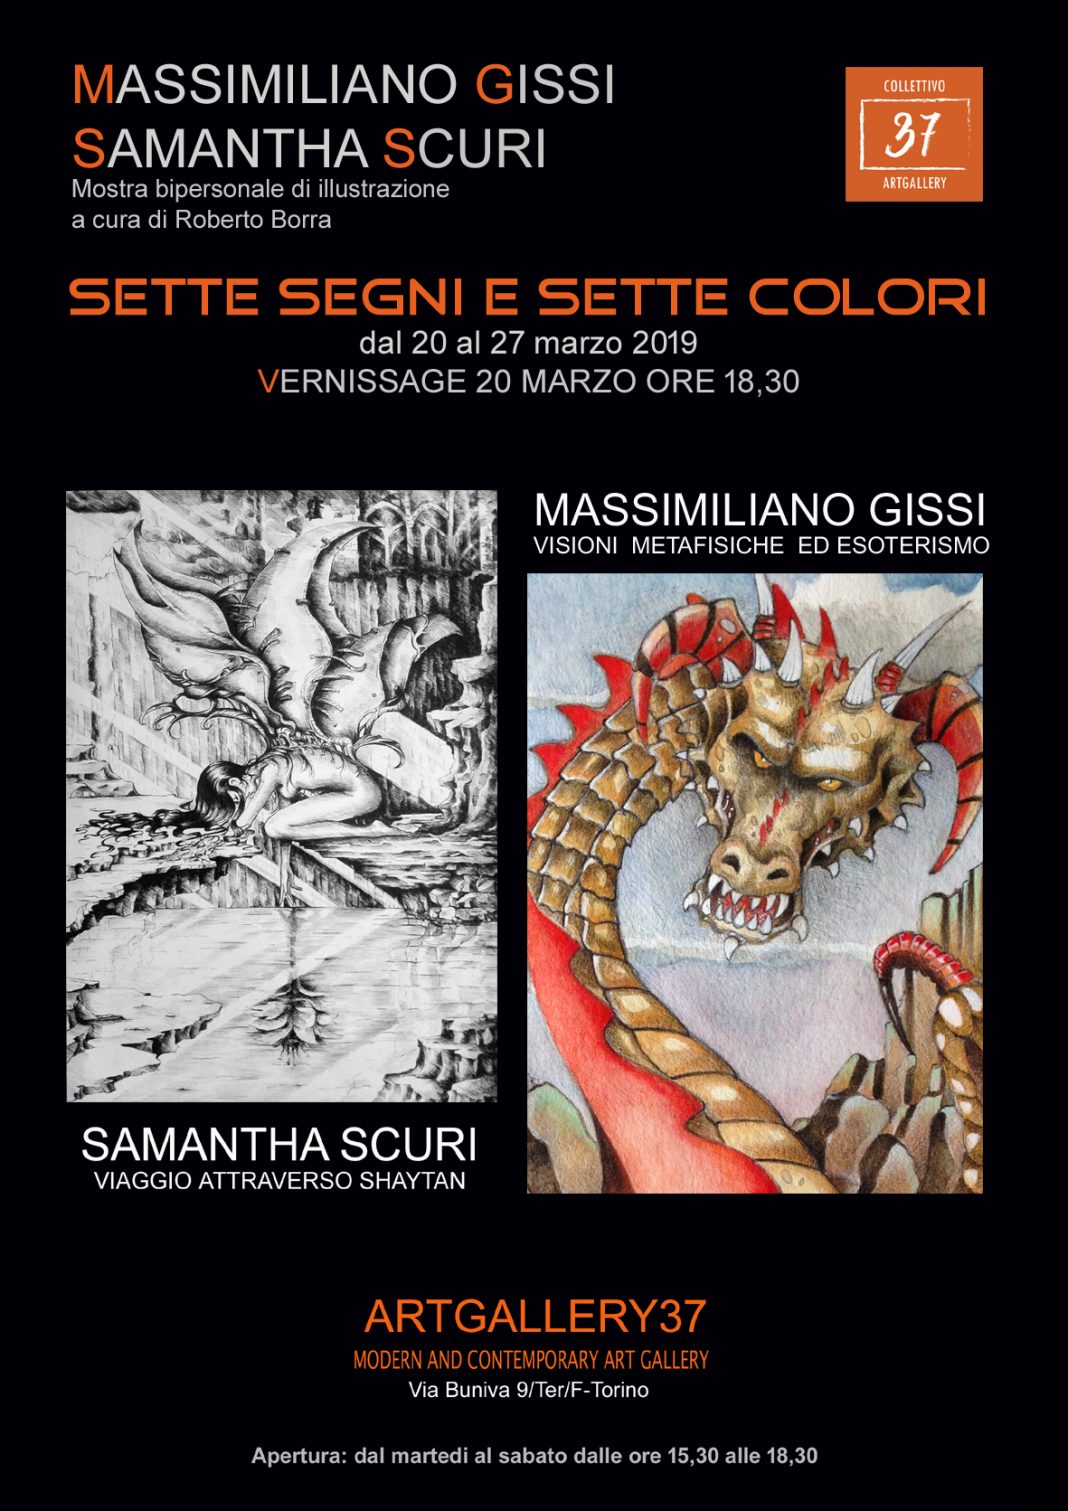 Samantha Scuri / Massimiliano Gissi – Sette segni e sette colorihttps://www.exibart.com/repository/media/eventi/2019/03/samantha-scuri-massimiliano-gissi-8211-sette-segni-e-sette-colori-1068x1511.jpg